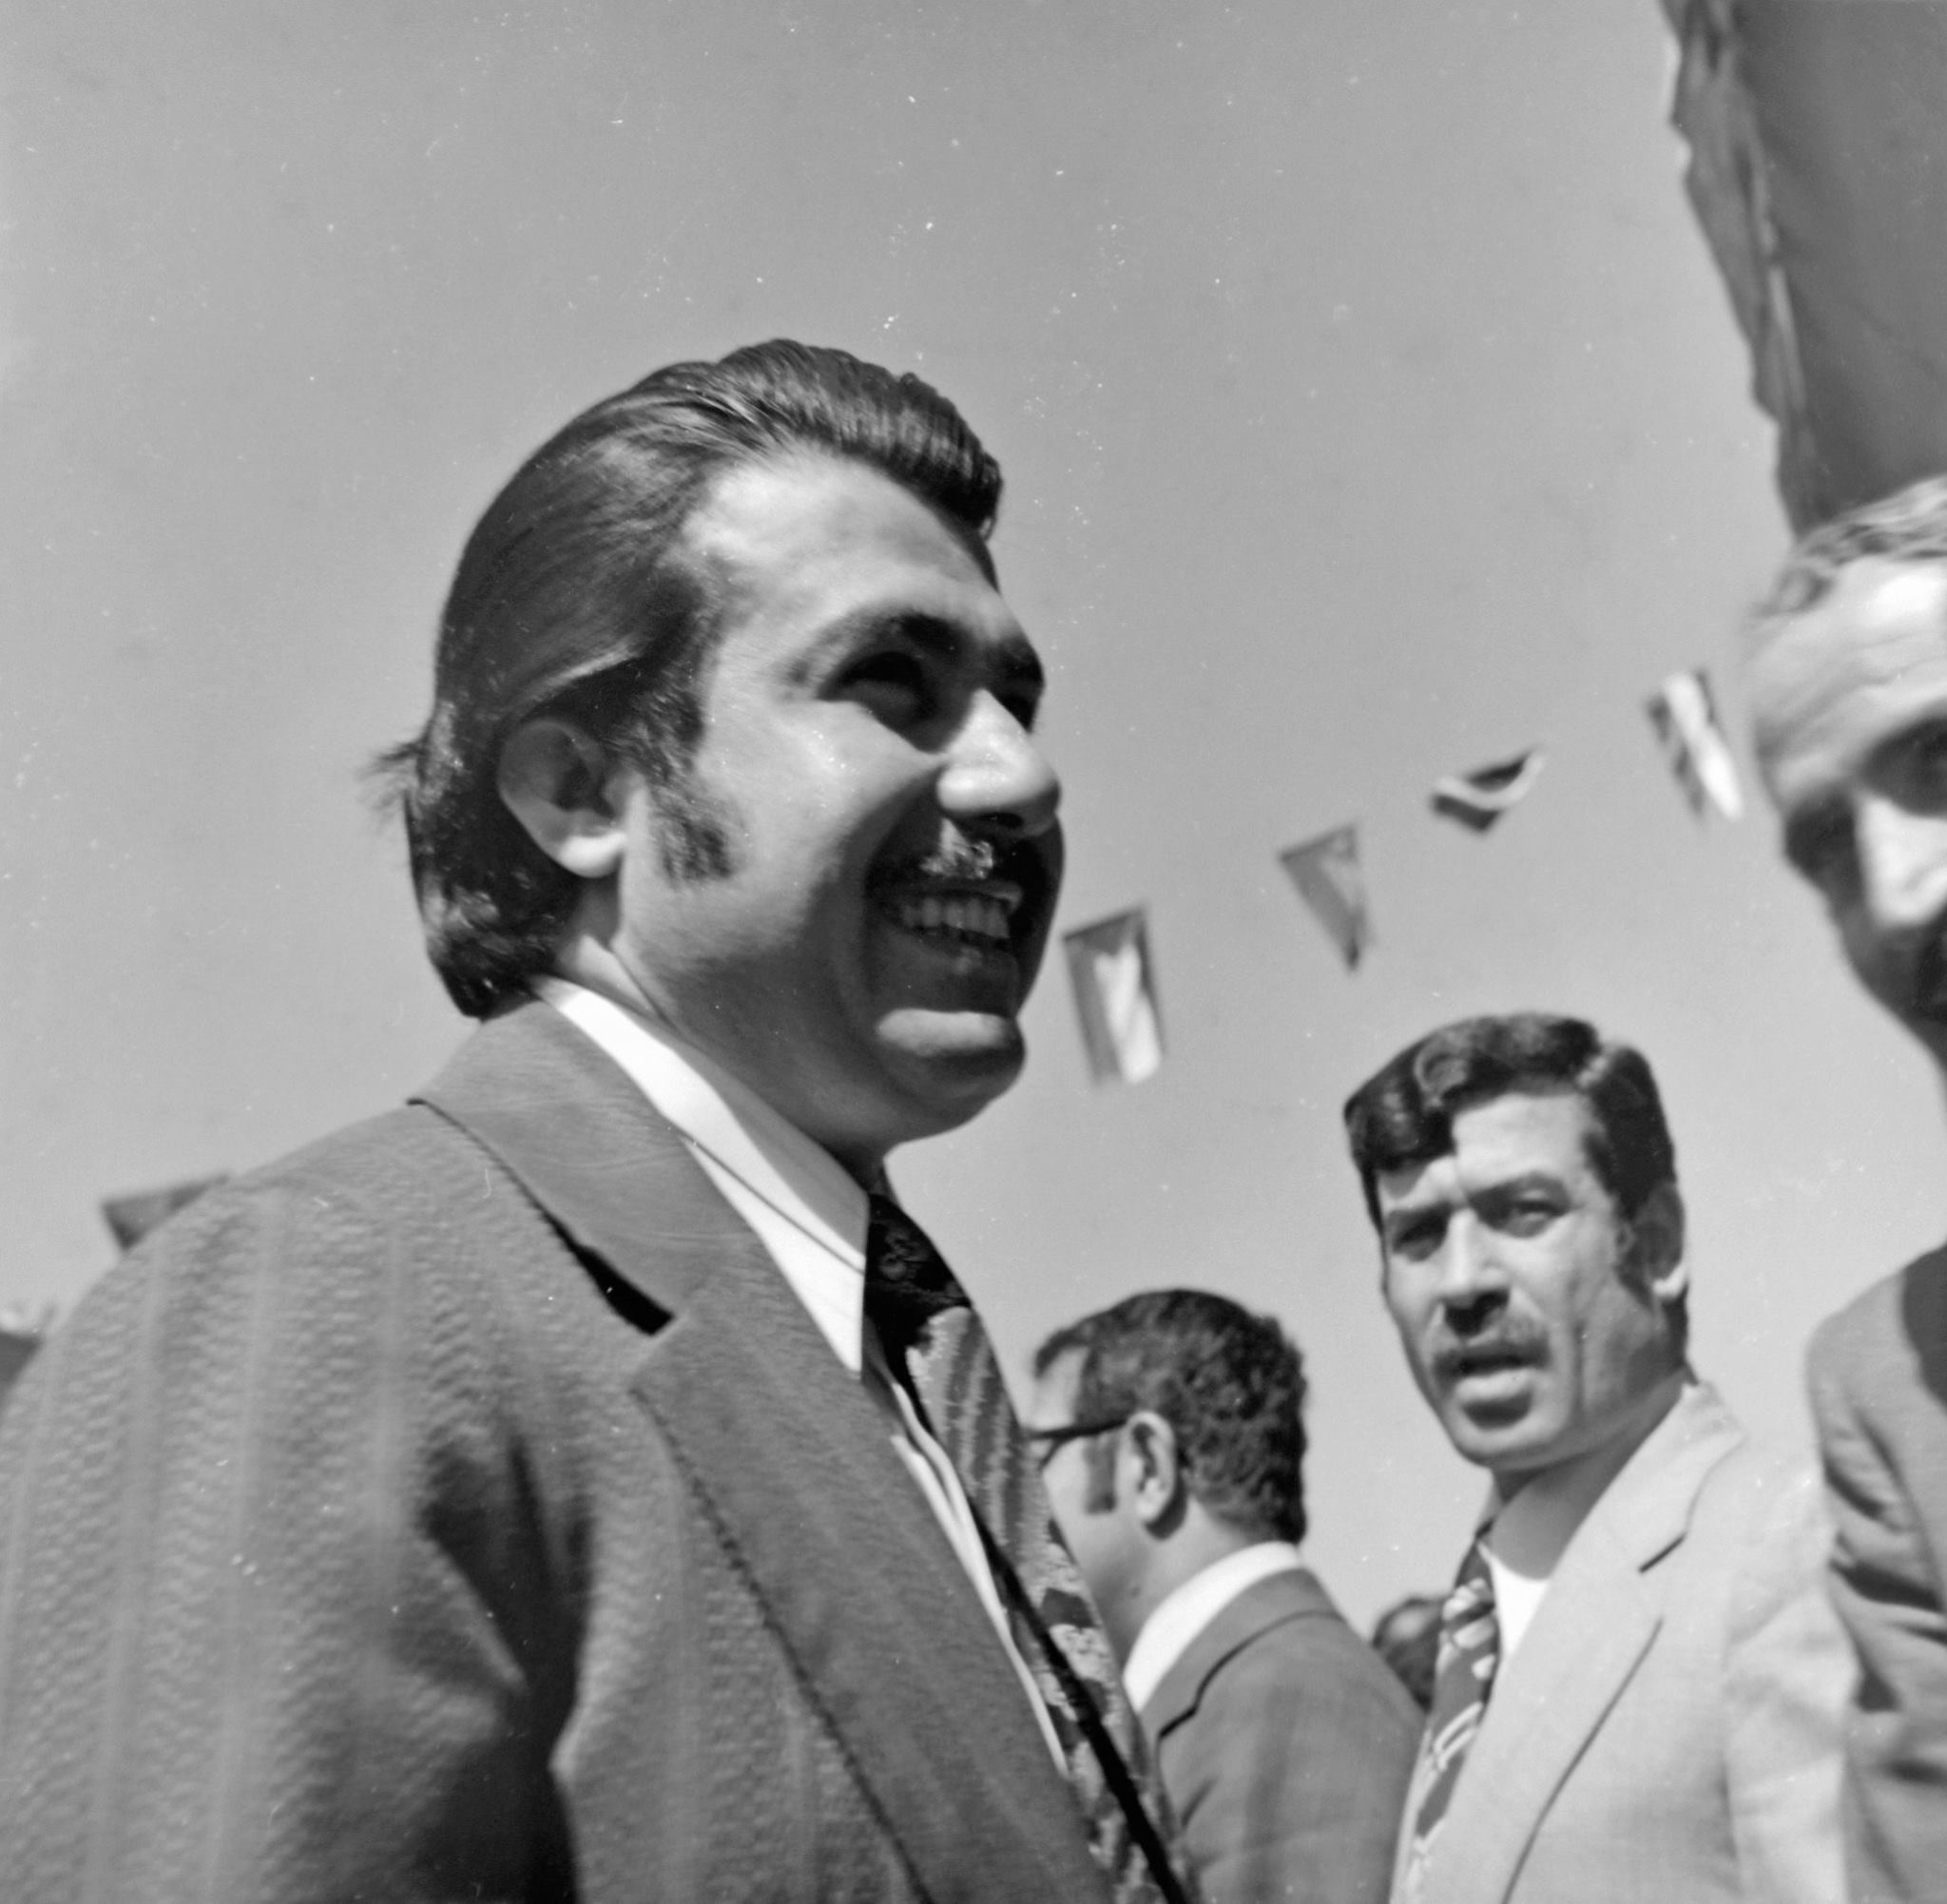 التاريخ السوري المعاصر - أحمد اسكندر أحمد وزير الاعلام السوري في سبعينيات القرن العشرين